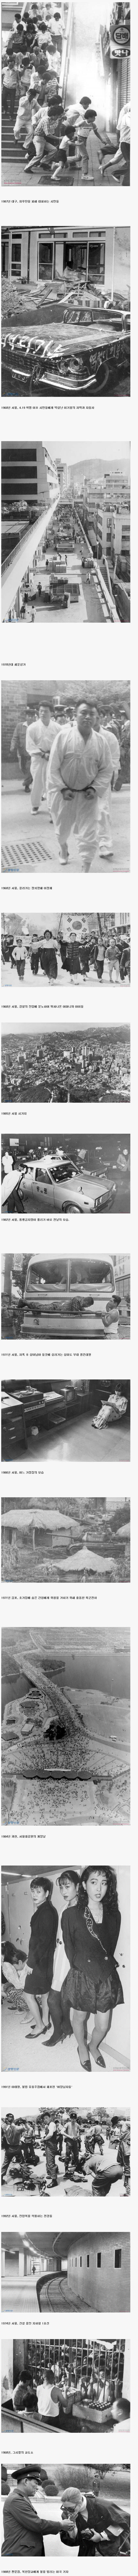 한국 현대사 속 사진들.jpg